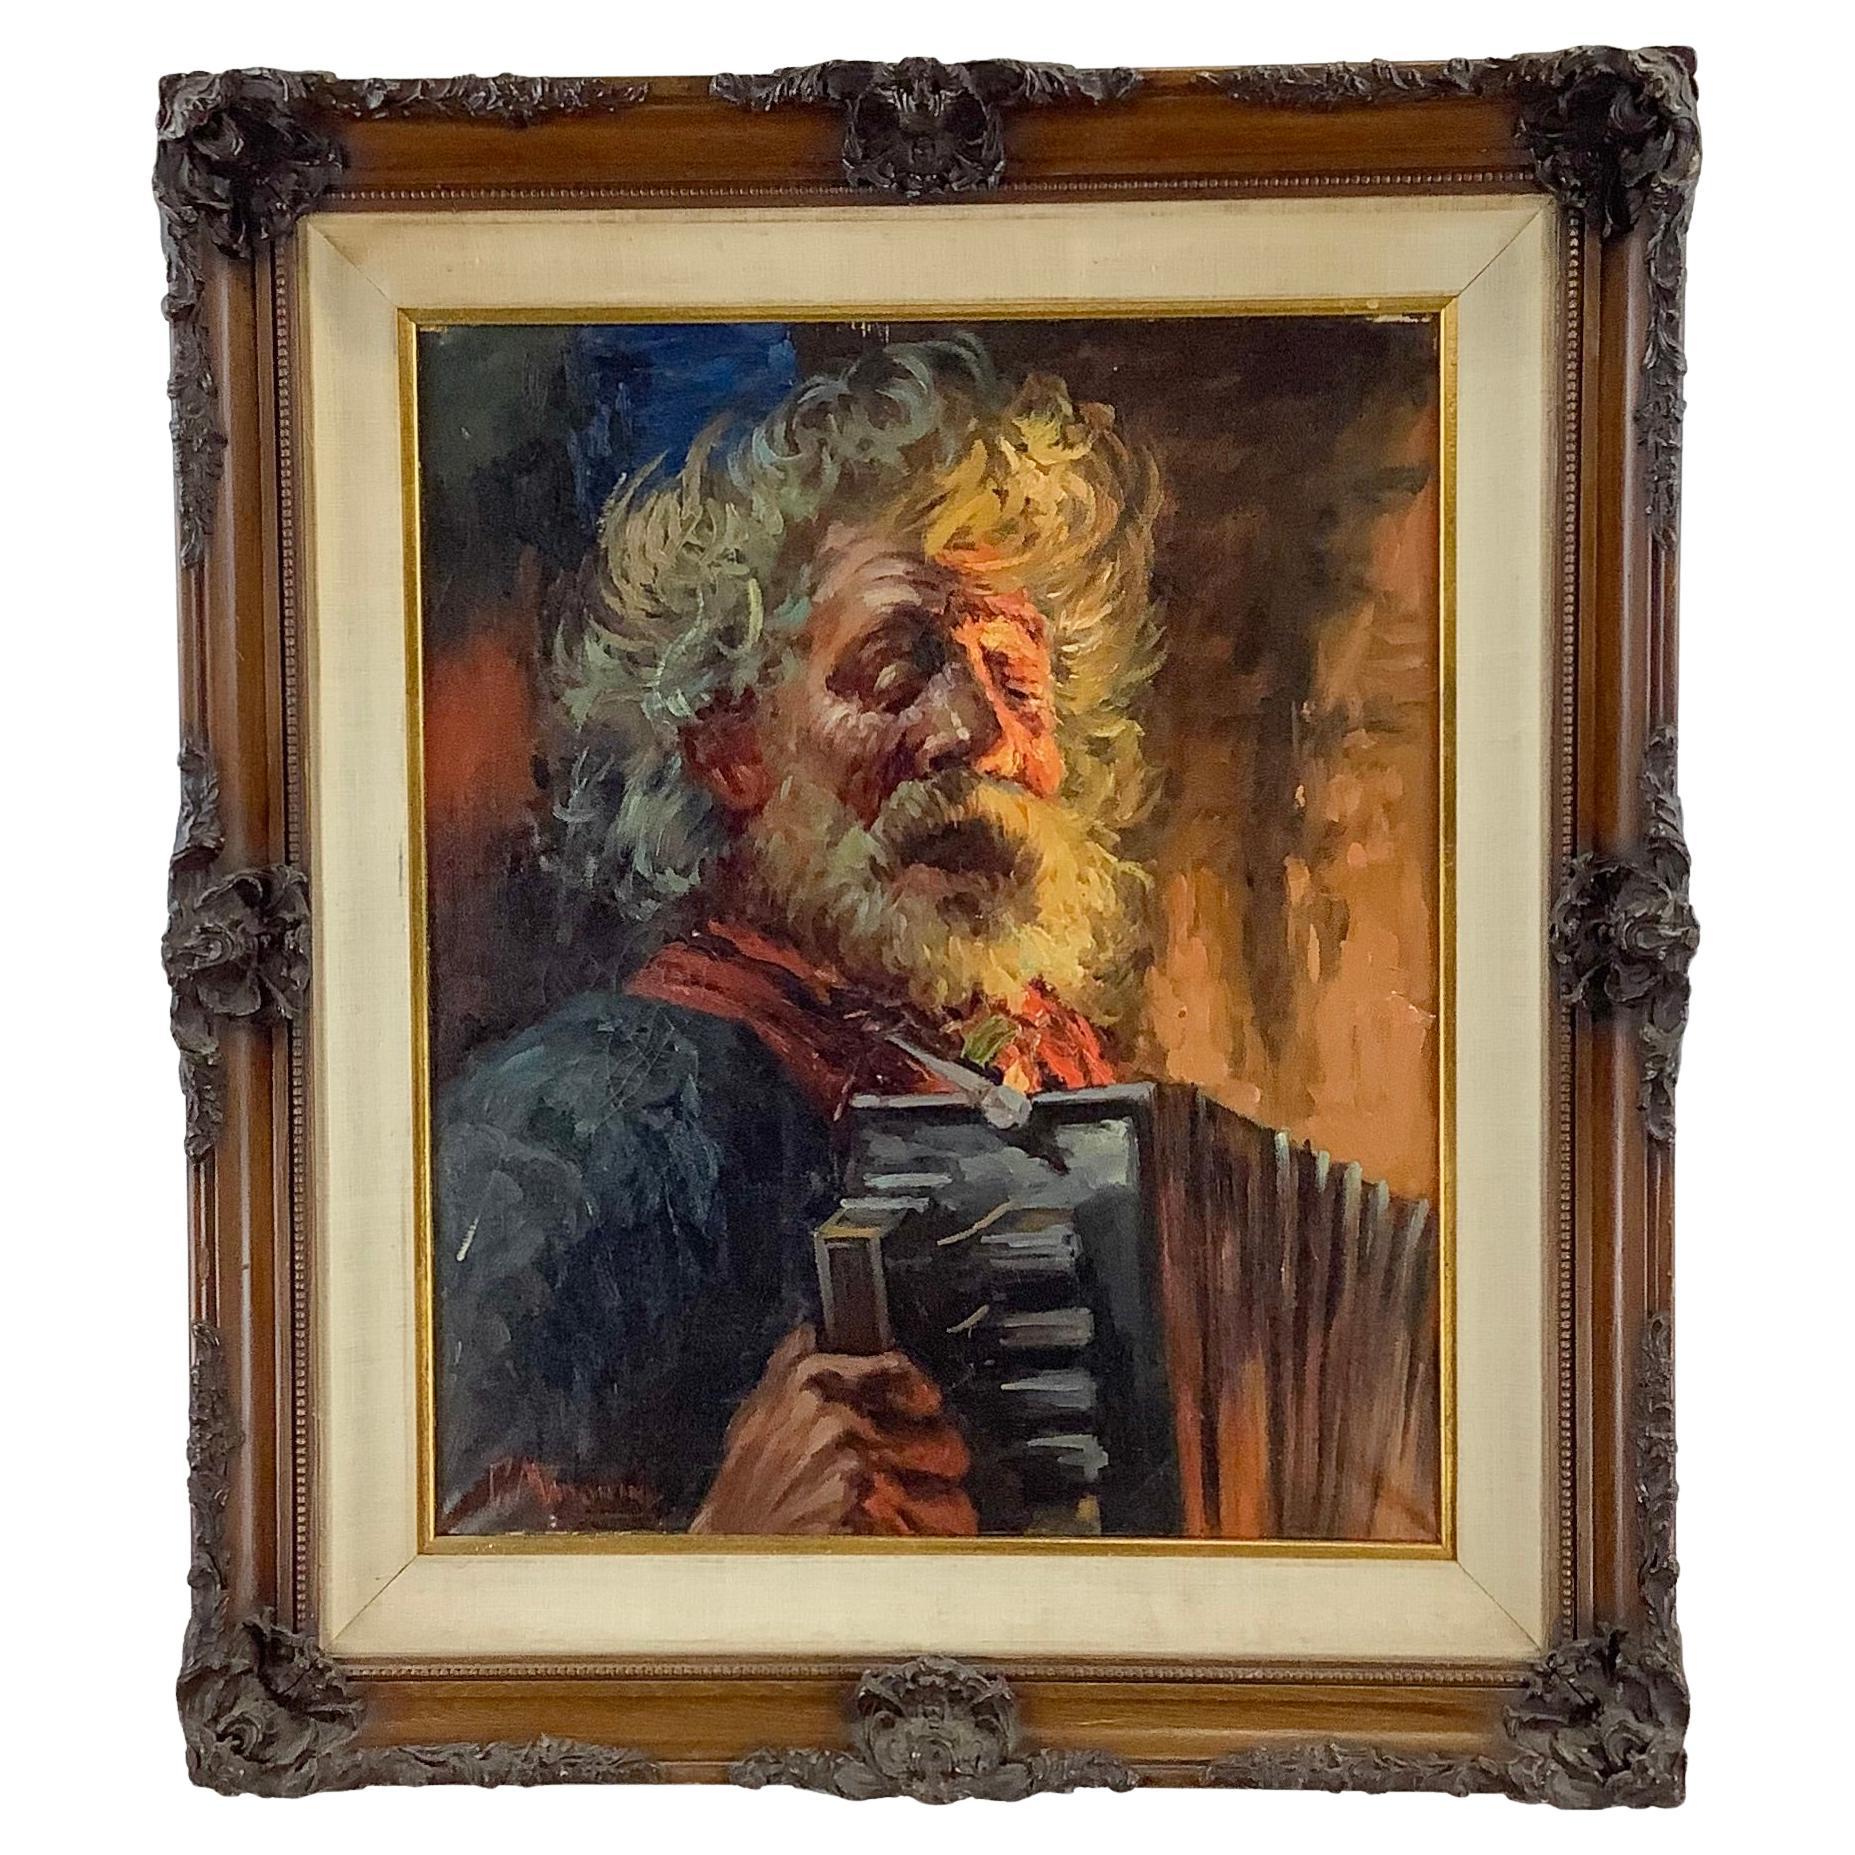 Peinture impressionniste vintage « Accordion Player » (joueur d'accordéon) huile sur toile de G. Madonini